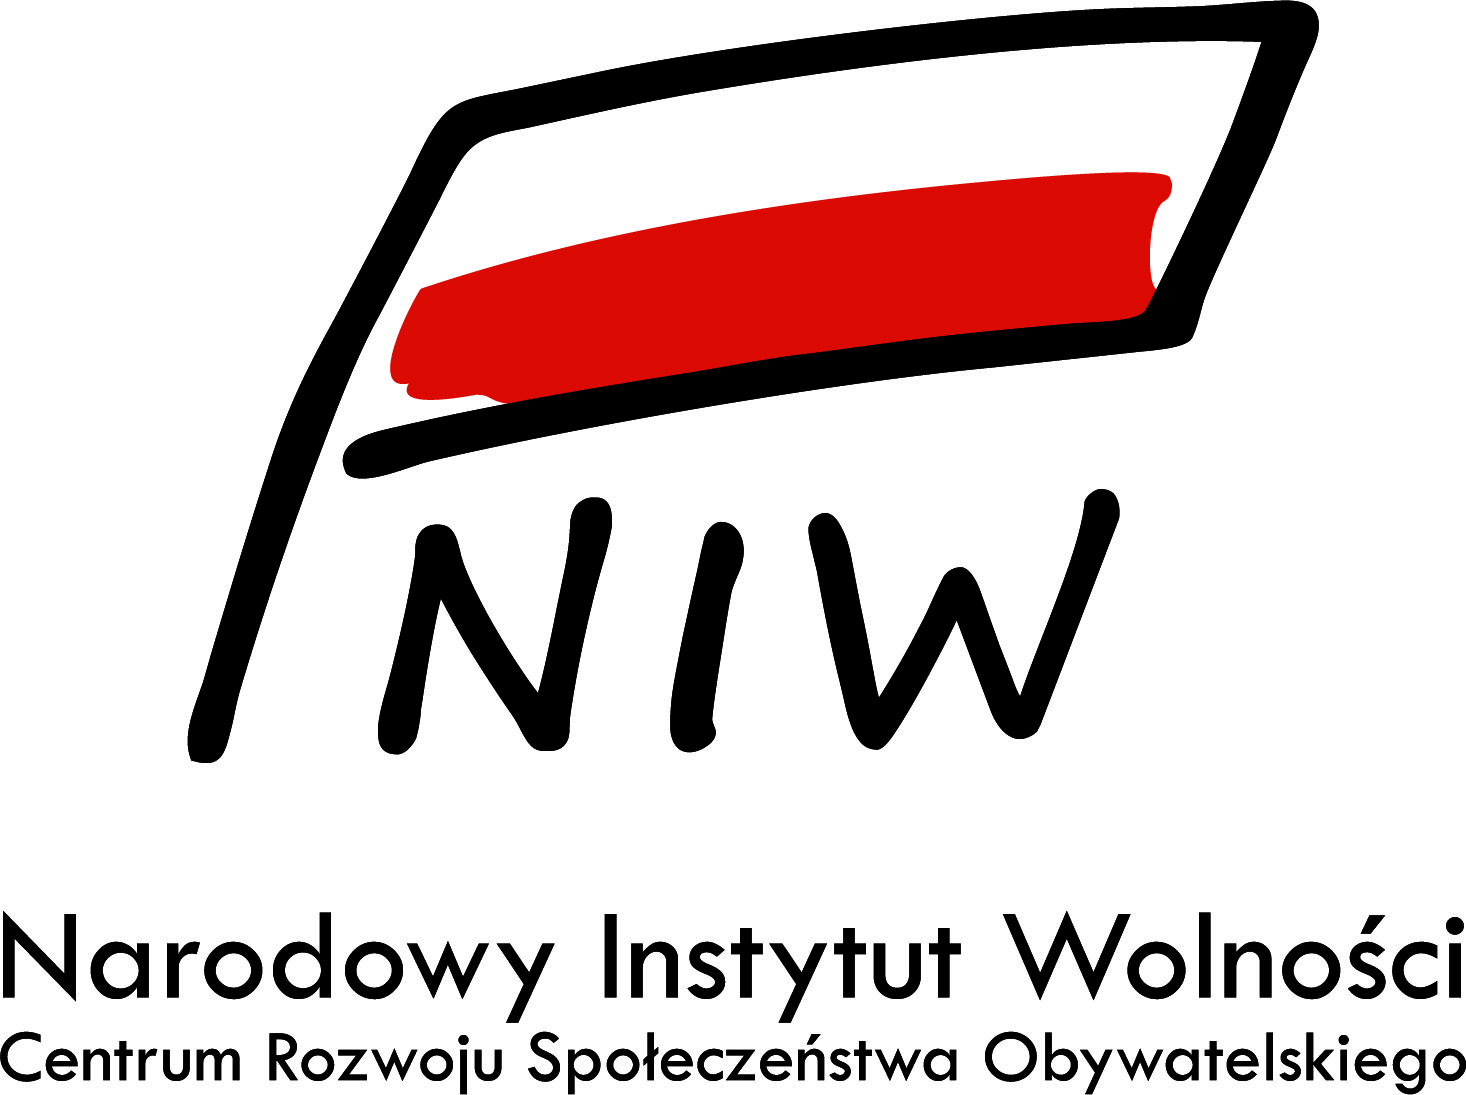 Logotyp Narodwego Instytutu Wolnoci - litery N, I, W 